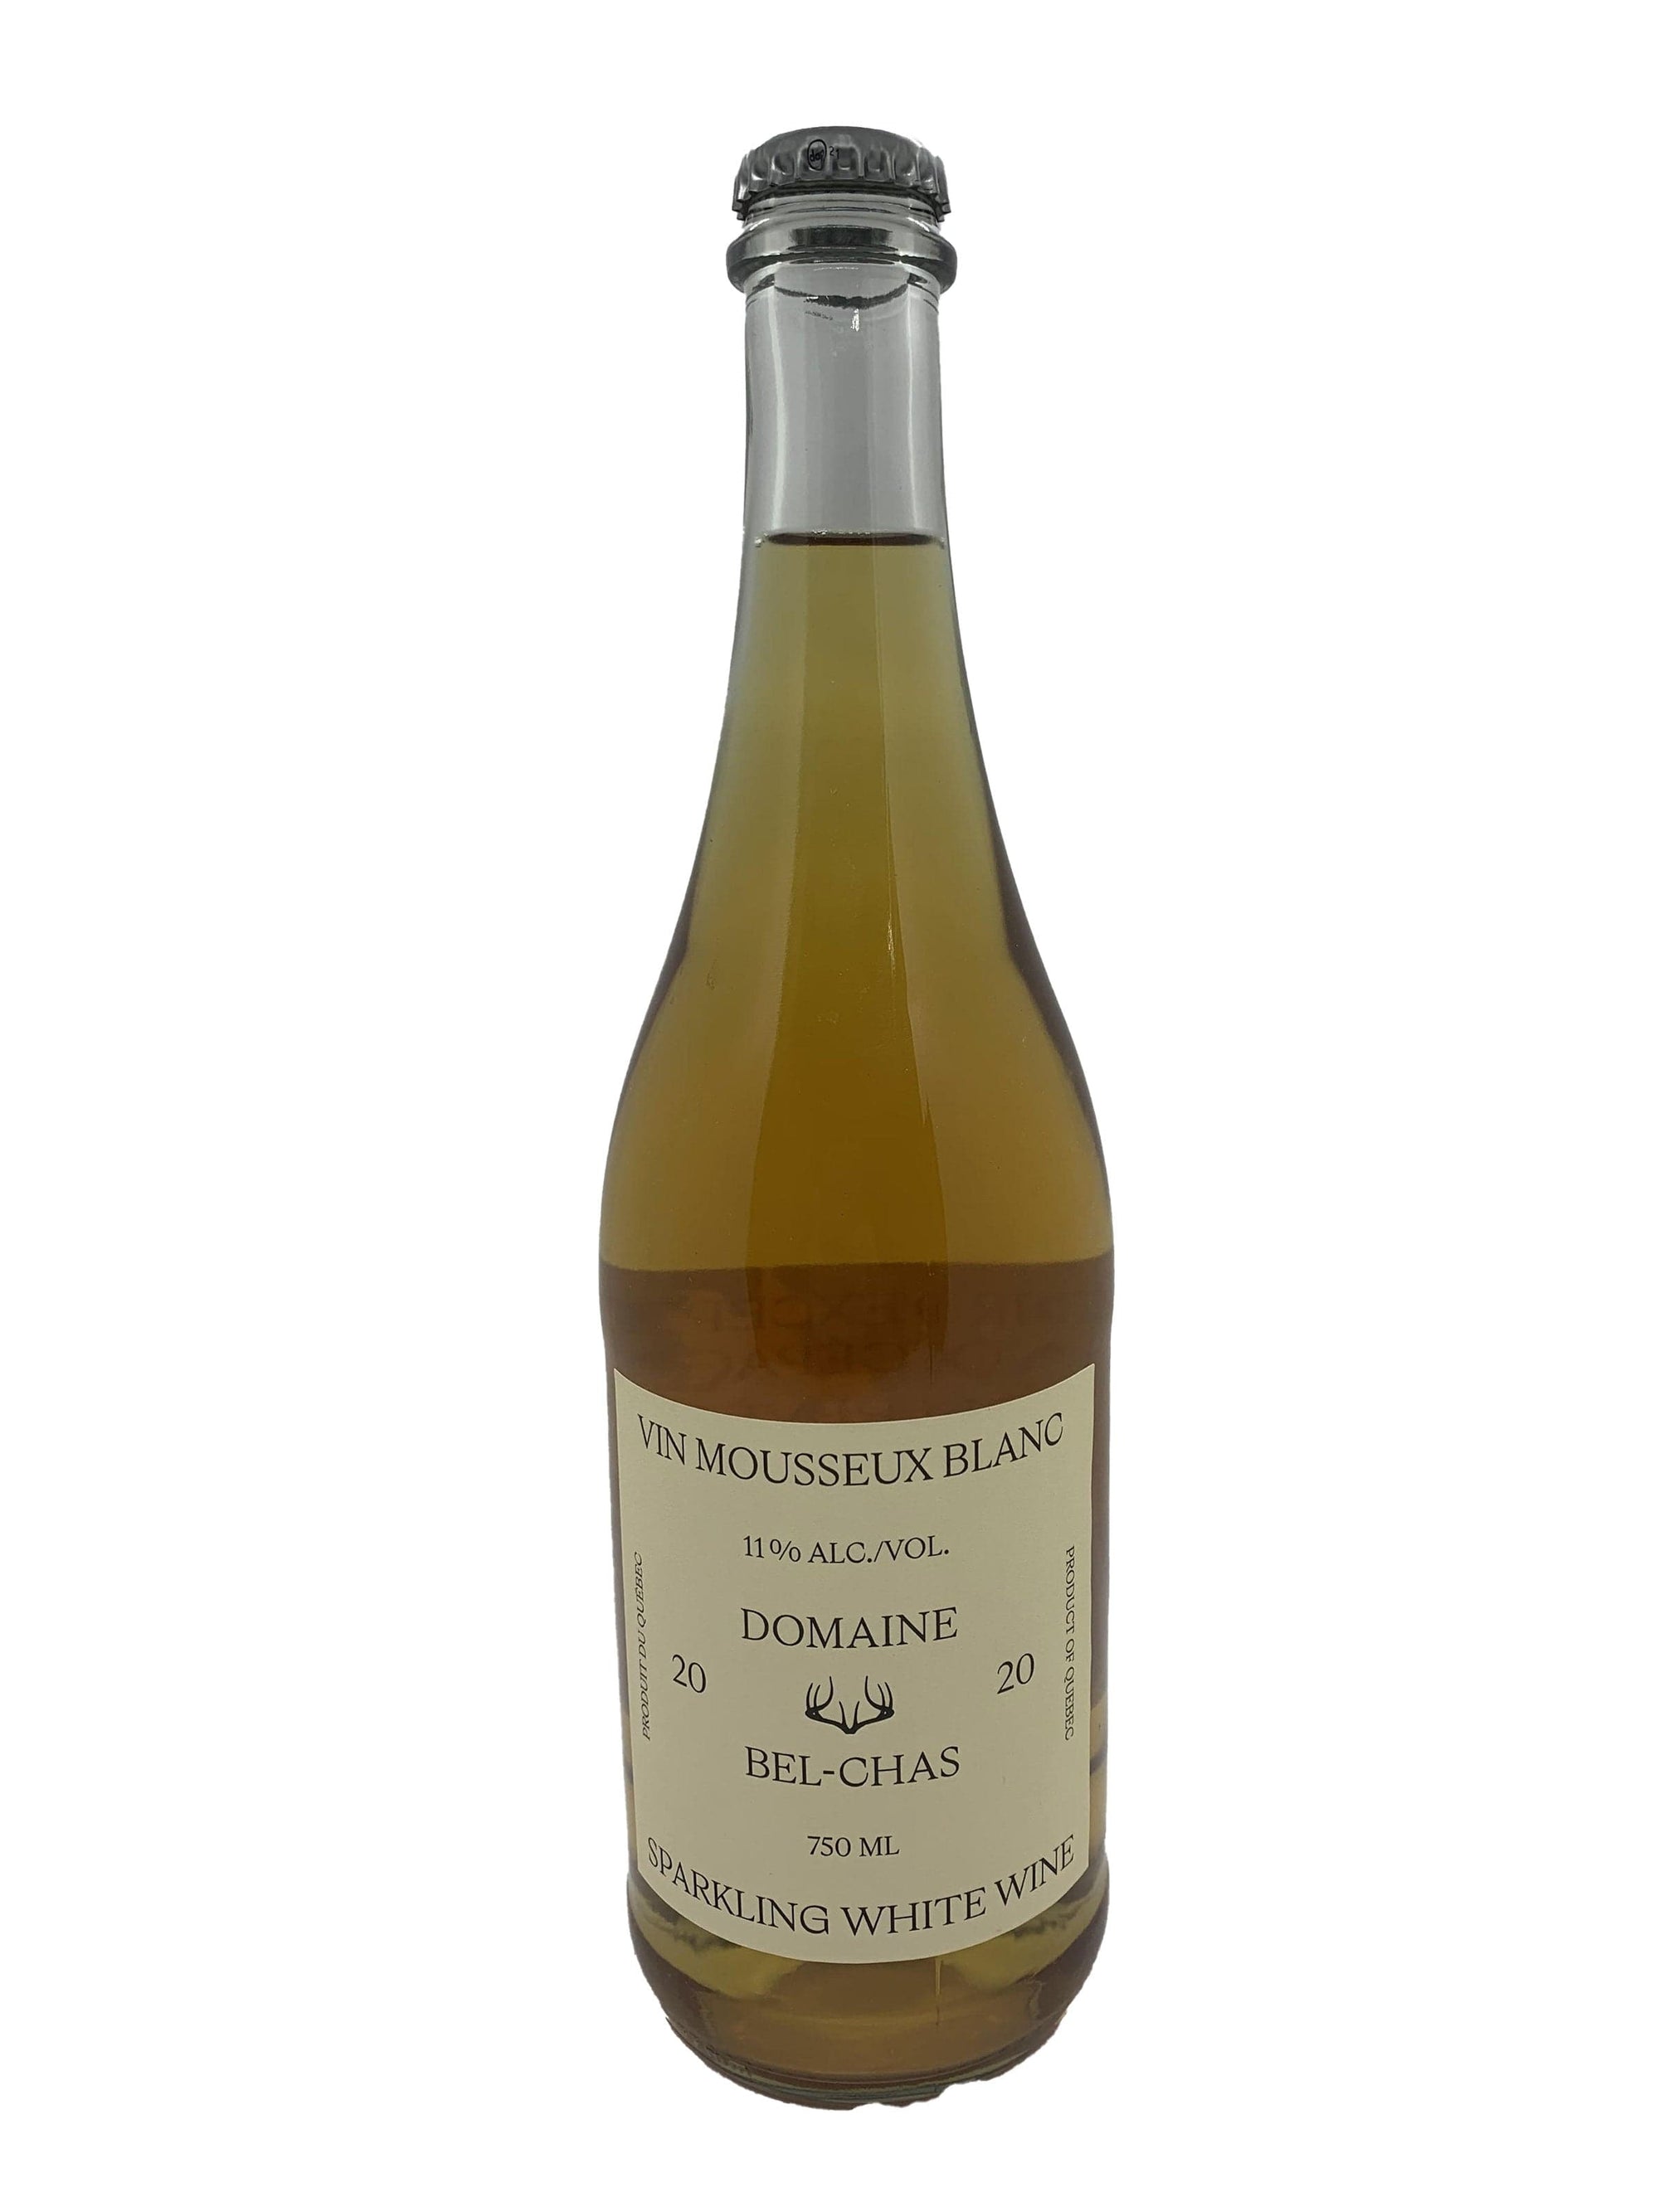 Vignoble Domaine Bel-Chas Mousseux blanc 2020- Vin mousseux du Domaine Bel-Chas